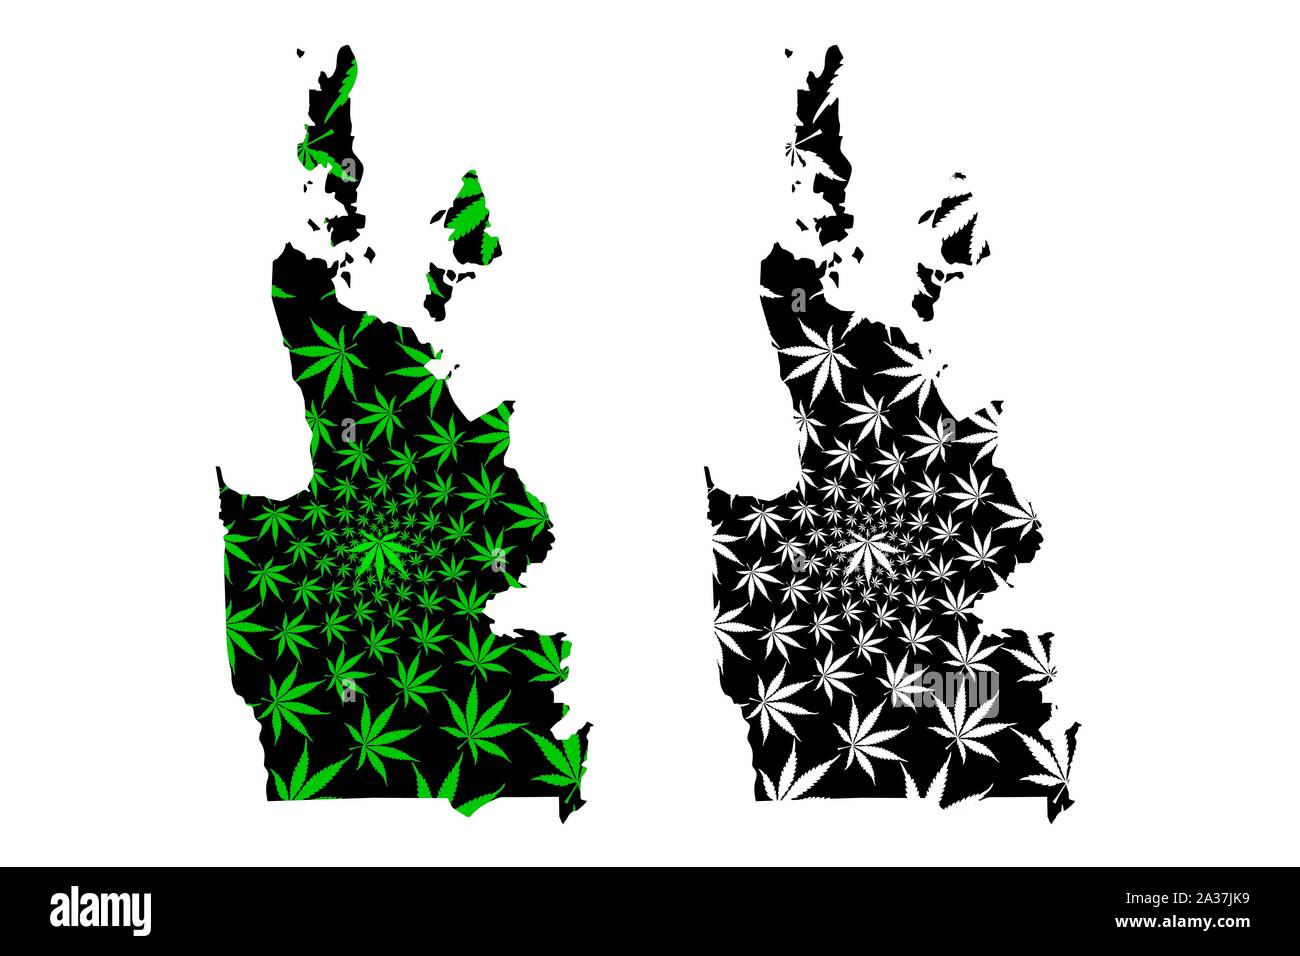 Caraga regione (regioni e province nelle Filippine Repubblica delle Filippine) mappa è progettato Cannabis leaf verde e nero, Regione XIII mappa m Illustrazione Vettoriale